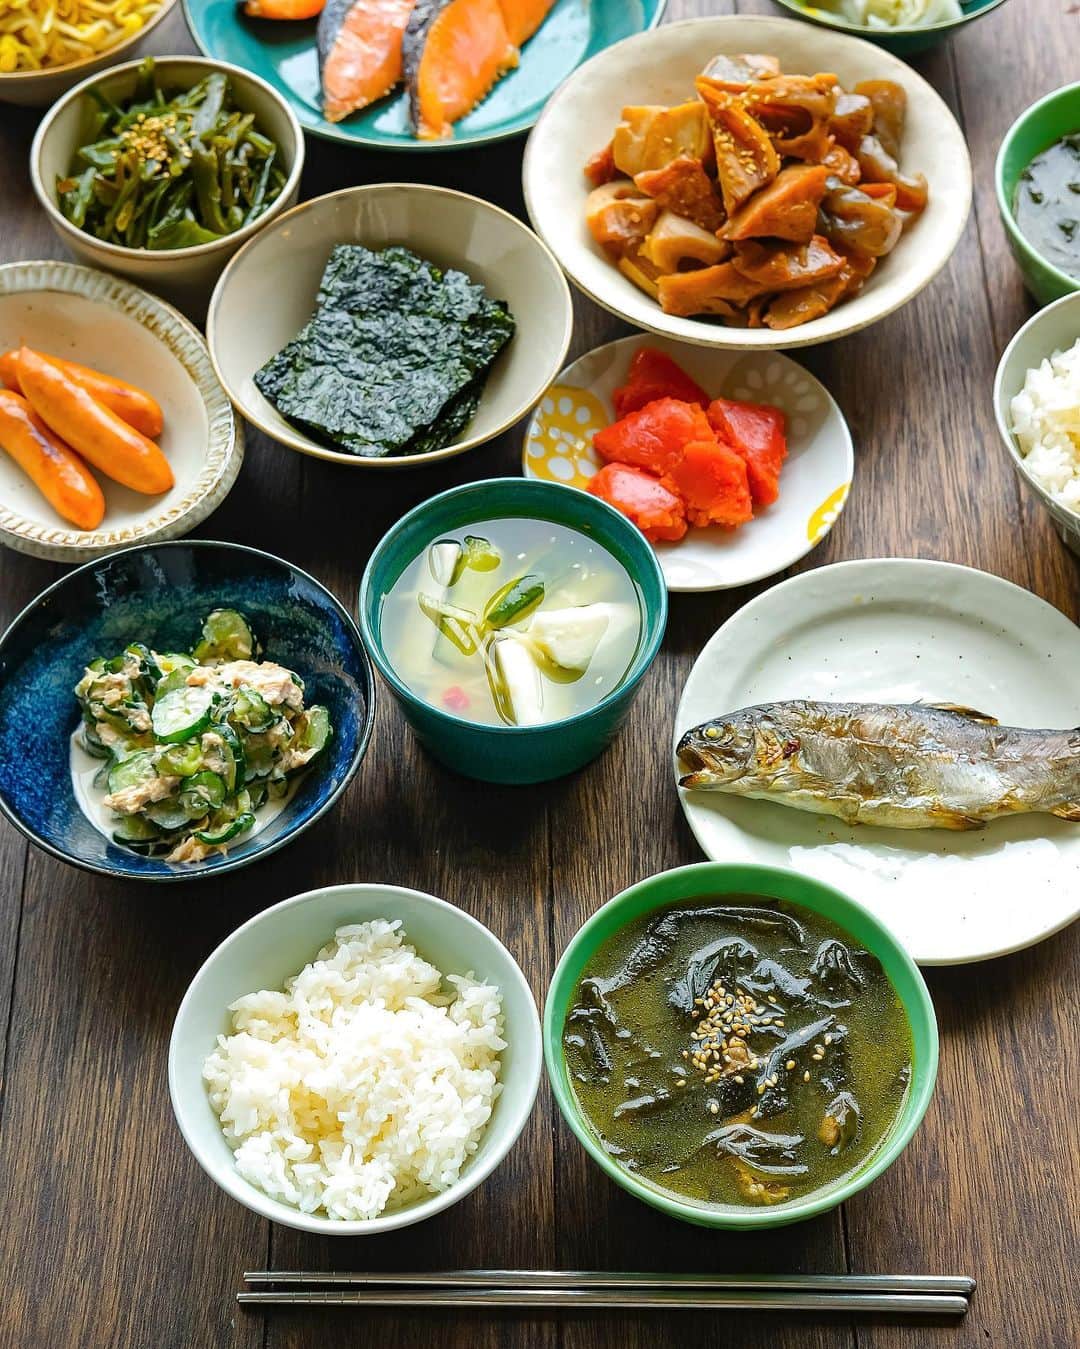 松山絵美さんのインスタグラム写真 - (松山絵美Instagram)「#レシピ有り　⁣ #松山家の韓国料理 ※４人分・２人分の材料、作り方、薬膳効果は写真スワイプしてもご覧いただけます🙆🏻‍♀️⁣ ⁣ ⁣ ⁣ ⁣ 《ミヨックッ（韓国わかめスープ）》⁣ ⁣ ⁣ 韓国の定番わかめスープです。誕生日はわかめスープが定番🙌❤️⁣ (写真2枚目は今月の次男の9歳のお誕生日の朝ごはんに🎂)⁣ わかめをたっぷり入れて、トロトロになるまで煮込むのがポイントです👍✨⁣ ⁣ ⁣ 薬膳効果⁣ ☆わかめ...体の熱を冷ます。余分な水分を出し、腫れ物を改善。⁣ ⁣ ☆牛肉...骨や筋肉の強化、食欲不振、虚弱体質、無気力に⁣ ⁣ ☆にんにく...風邪予防に、解毒に、疲労回復に、脳の活性に、動脈硬化予防に、血糖値の改善に⁣ ⁣ ⁣ ⁣ （調理時間：25分)⁣ -------------------⁣ 【材料4人分】(２人分の分量は写真５枚目をご覧ください💁🏻‍♀️)⁣ -------------------⁣ 牛こま切れ肉:200g～250g⁣ ⁣ わかめ:（戻して水気を絞ったもの）約200g⁣ ⁣ (A)濃い目の昆布といりこのだし汁又は水:1200㏄⁣ (A)醬油・酒:各大さじ1⁣ (A)にんにくすりおろし:小さじ2⁣ ⁣ 昆布茶又は昆布だしの素やいりこだしの素、ダシダなど:水を使う場合のみ小さじ2⁣ ⁣ ごま油:大さじ2⁣ ⁣ 塩:適量⁣ ⁣ 白いりごま:お好みで⁣ -------------------⁣ -------------------⁣ 【下準備】わかめ（戻して水気を絞ったもの）は食べやすく切る。⁣ ⁣ ⁣ ⁣ 【1】鍋にごま油を熱し、牛こま切れ肉を入れ、塩少々振って炒める。⁣ ⁣ ⁣ ⁣ 【2】牛肉に火が通ったらわかめを加えて炒める。⁣ ⁣ ⁣ ⁣ 【3】油がまわったら、【A】と水の場合のみ昆布茶又は昆布だしの素やいりこだしの素、ダシダなどを入れ、煮立ったら蓋をして弱火で約15～20分煮る。⁣ 味をみて、塩で調えたら出来上がり！⁣ 器に盛り、お好みで白いりごま・粗びき黒こしょうを振る。⁣ ⁣ ⁣ ⁣ ⁣ Nadiaレシピ🆔 440270⁣ レシピサイトNadiaの検索バーにレシピ🆔番号を入力してみてください⁣ https://oceans-nadia.com/⁣ ⁣ ⁣ ⁣ ⁣ ✩✩✩✩✩✩《お知らせ》✩✩✩✩✩✩⁣ 『4児ママ・松山さんの薬膳効果つき やみつき節約めし』⁣ ⁡⁣ 本書では1食1人分のおかずが100円台に収まるレシピをご紹介しています✨⁣ また「やる気のないときほど開きたい料理本」をめざして、簡単な調理法にもこだわりました。長くレパートリーに加えていただけるメニューが見つかれば、うれしいです🥹⁣ ⁡⁣ Amazon⁣ https://www.amazon.co.jp/dp/4391155567/⁣ ⁡⁣ 楽天ブックス⁣ https://books.rakuten.co.jp/rb/16605719/⁣ ⁡⁣ ⁡⁣ ⁡⁣ ⁡⁣ 《松山絵美のカンタンなことしかやらないレシピ》⁣ ⁡⁣ 【手間は省いて愛情込める】をモットーに、⁣ めんどうなことを「やらない」レシピたち。 ラクして作れるのに見映えもよくて、家族もパクパク食べてくれる！⁣ そんなレシピを100品と、調味料のご紹介や、お気に入りキッチンまわりアイテムのご紹介。私の1day ルーティーン。⁣ 薬膳アドバイスなど、コラムページもたくさんです🙌✨　　⁣ ⁡⁣ Amazon⁣ https://www.amazon.co.jp/dp/4651201350/⁣ 楽天ブックス⁣ https://books.rakuten.co.jp/rb/16974637/?l-id=search-c-item-text-03⁣ ⁡⁡⁣ ⁡⁣ ⁡⁣ ⁡⁣ ＊＊＊＊＊＊＊＊＊＊＊＊＊＊＊＊＊＊＊＊＊＊＊⁣ ⁡⁣ #ネクストフーディスト　	⁣ #Nadia⁣ #NadiaArtist⁣ #Nadiaレシピ⁣ #フーディーテーブル⁣ #レシピ⁣ #やみつきレシピ⁣ #簡単レシピ⁣ #節約レシピ⁣ #時短レシピ⁣ #今日もハナマルごはん⁣ #おうちごはんlover⁣ #おうちごはん革命⁣ #やみつき節約めし	⁣ #松山絵美のカンタンなことしかやらないレシピ⁣ #やらないレシピ⁣ #recipe⁣ #cooking⁣ #japanesefood⁣ #Koreanfood⁣ #レシピあり⁣ #レシピ付き⁣ #料理好きな人と繋がりたい⁣ #韓国料理⁣ #韓国料理レシピ⁣  ⁣」9月29日 14時42分 - emi.sake